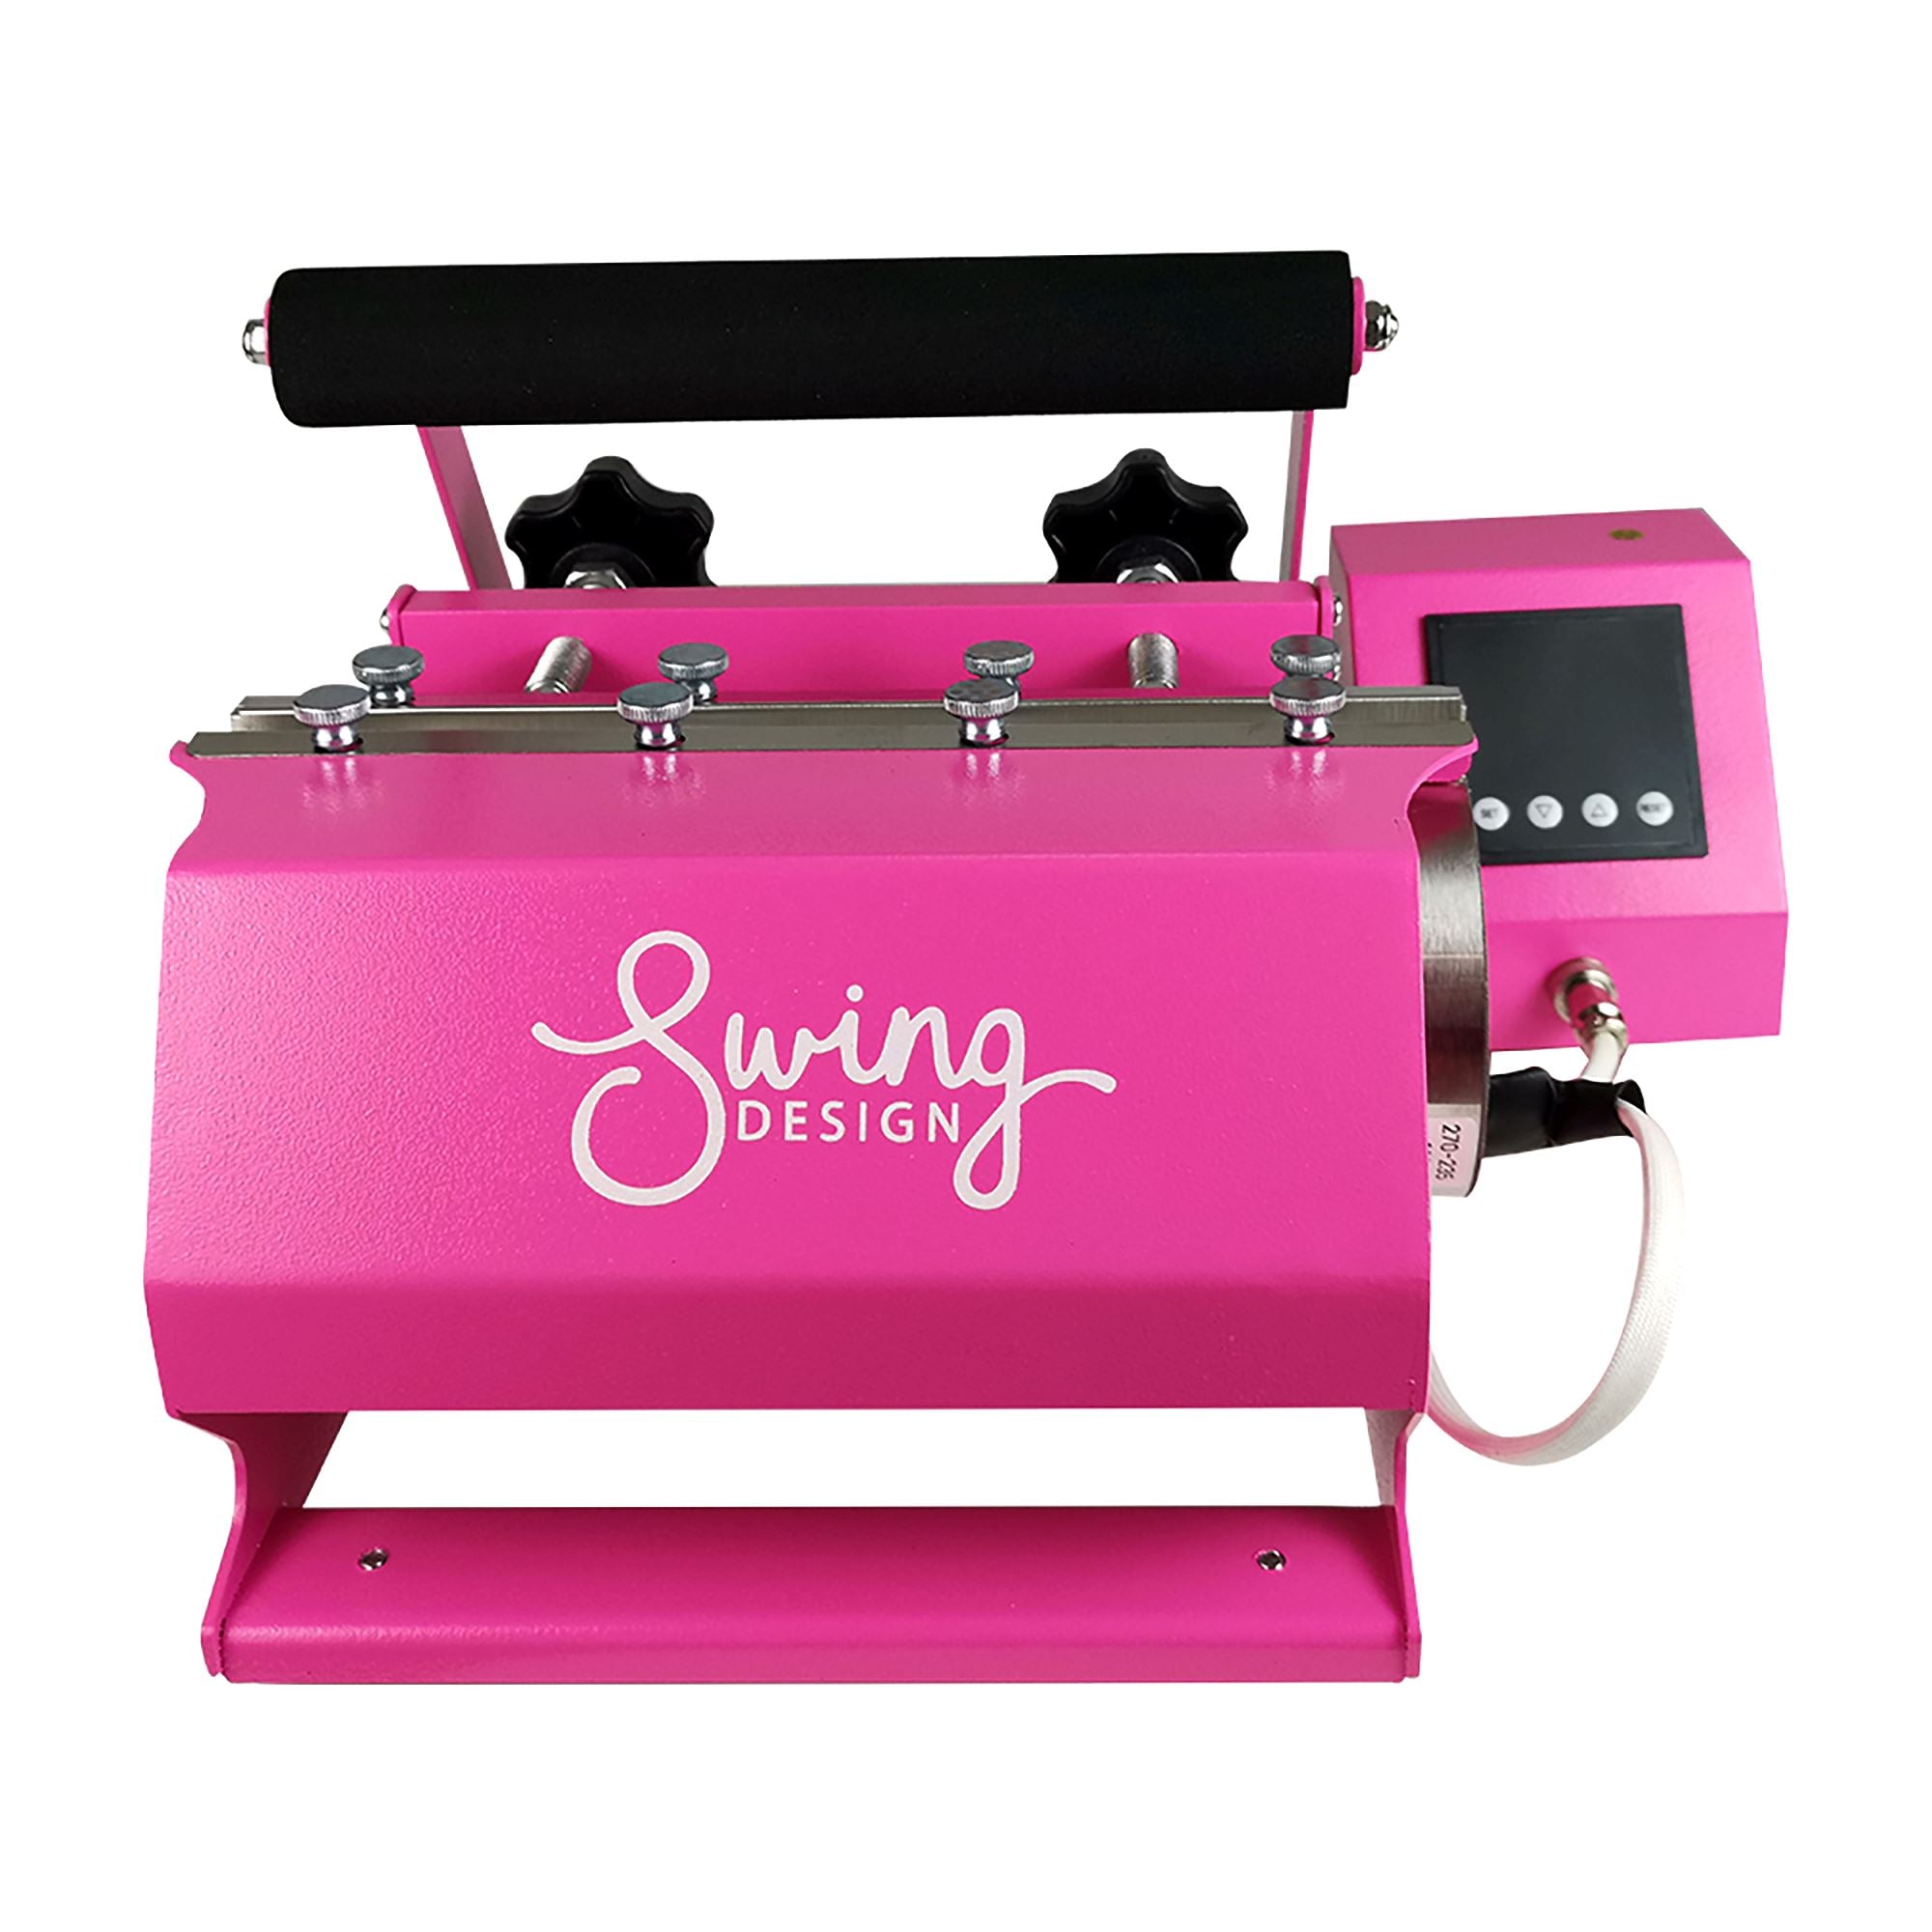 Swing Design 7-in-1 Tumbler Press 20oz/30oz Bundle - Pink